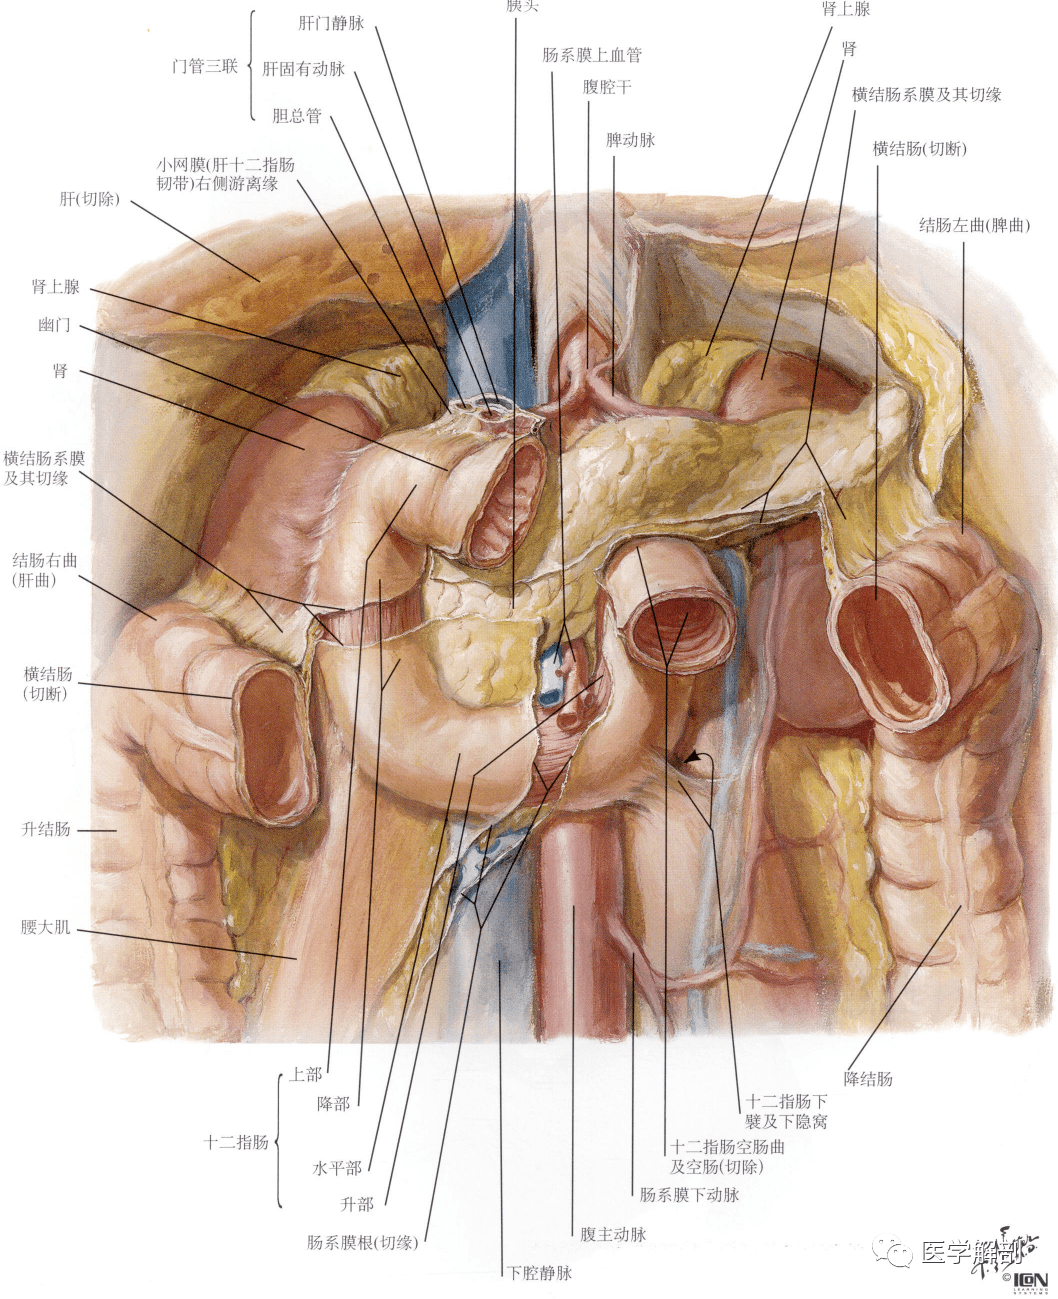 人体解剖学:消化管 | 小肠